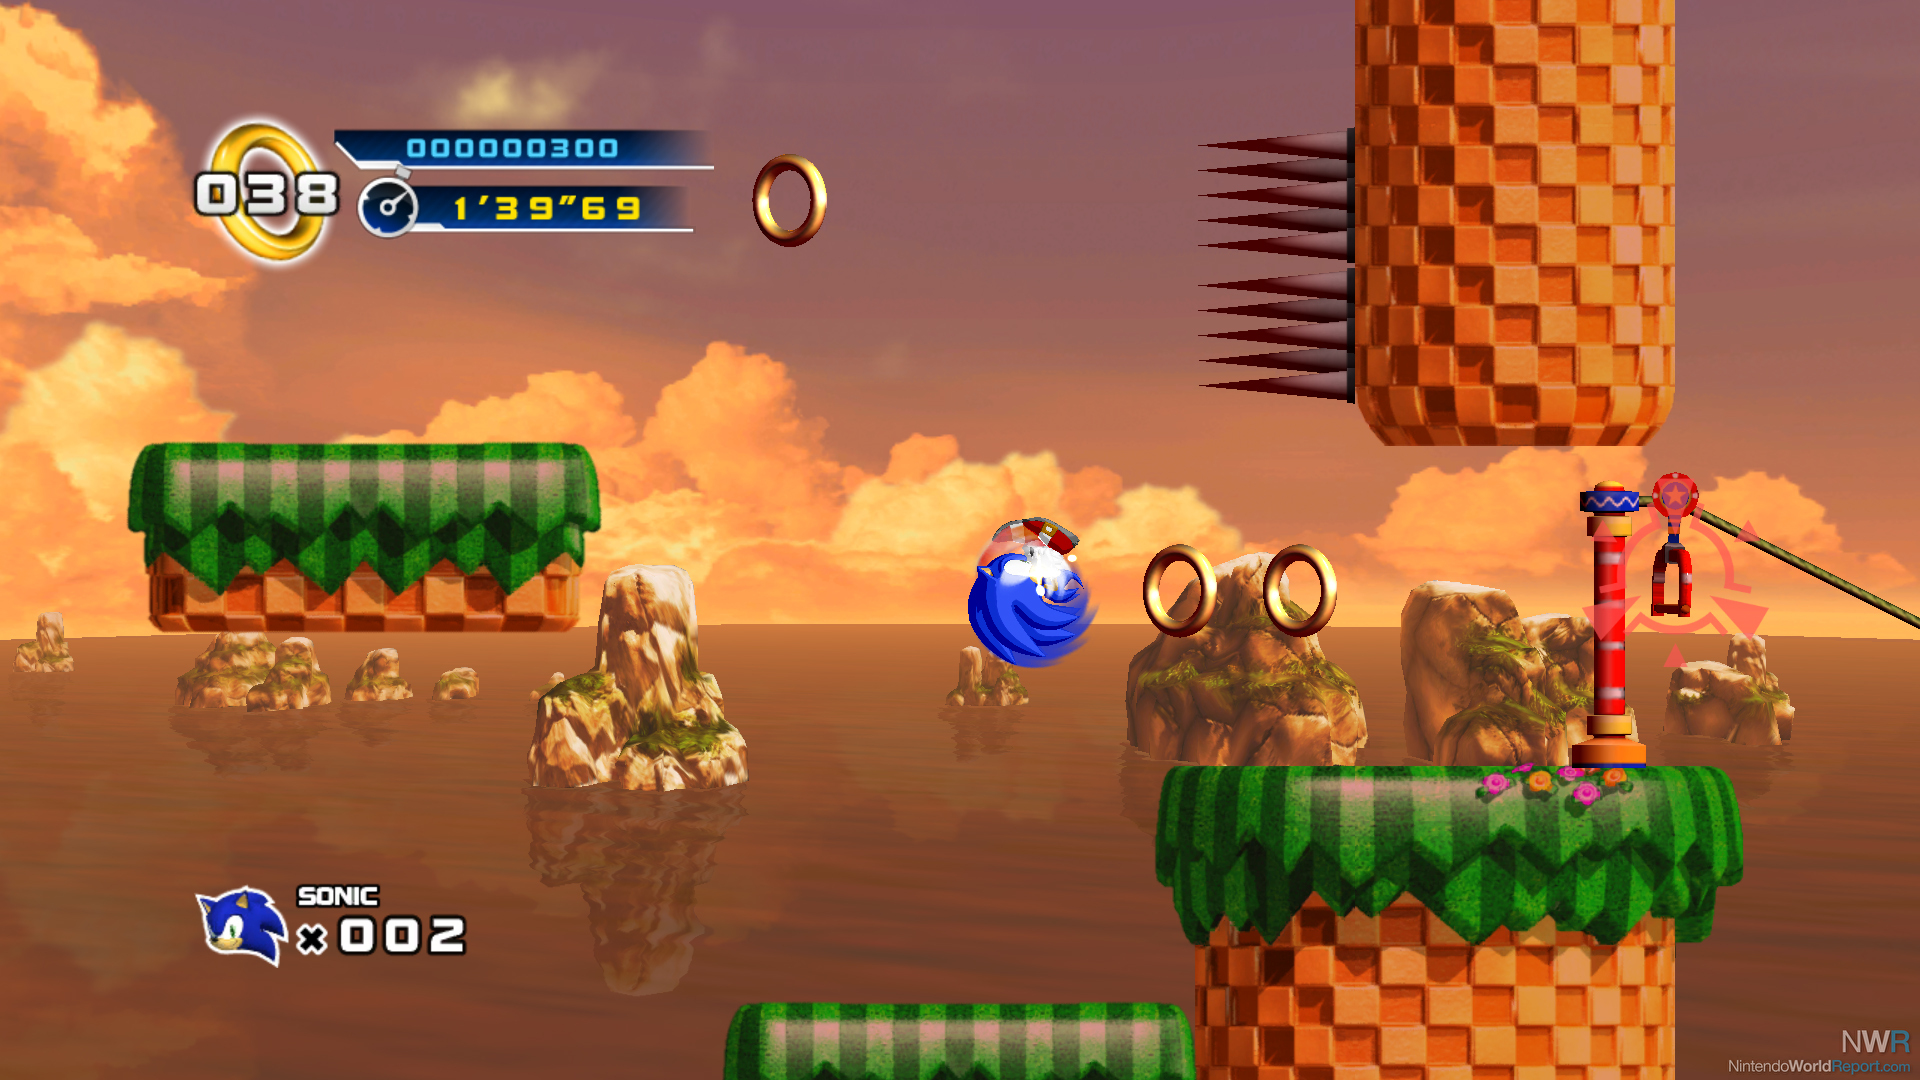 Sonic The Hedgehog 4: Episode II